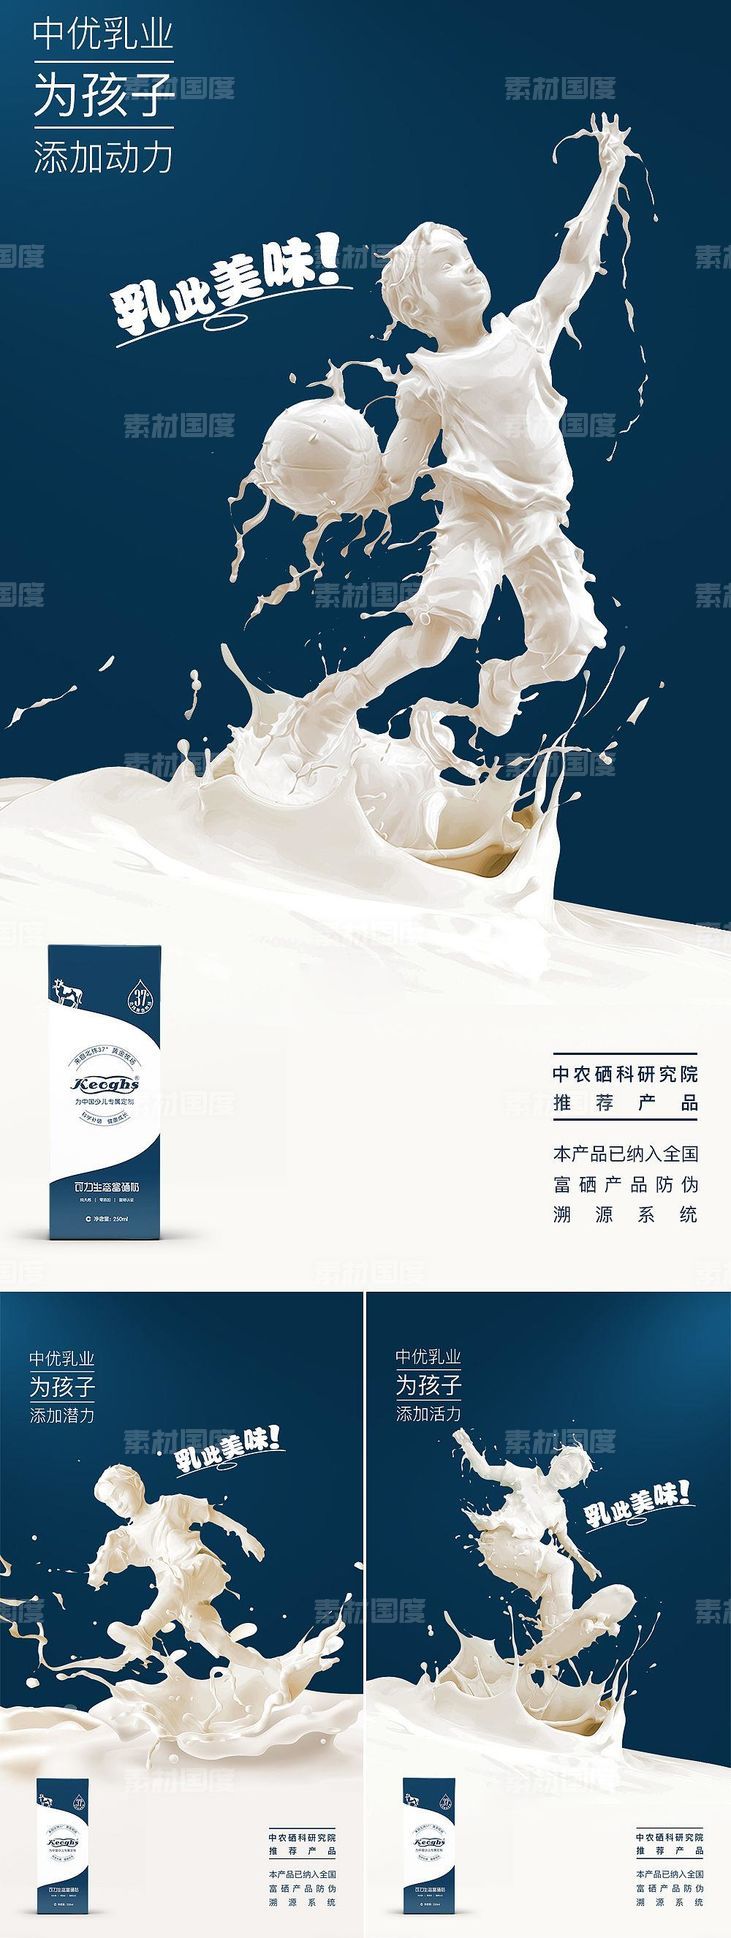 微商招商牛奶系列创意海报